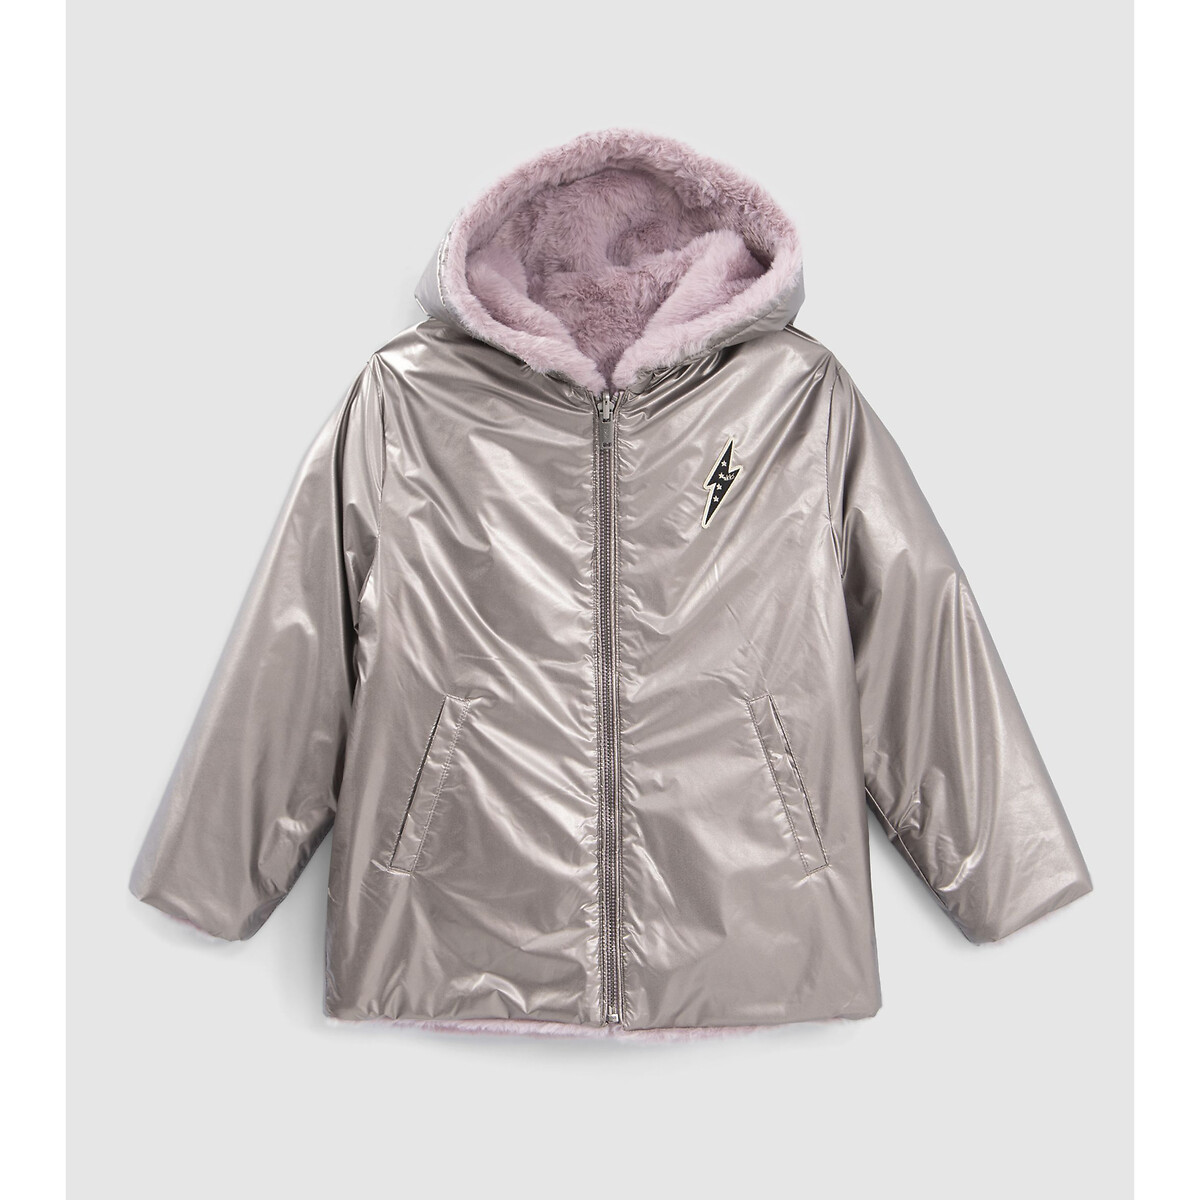 Куртка стеганая с капюшоном с металлическим отливом 6 лет - 114 см розовый куртка стеганая с капюшоном с металлическим отливом 6 лет 114 см розовый